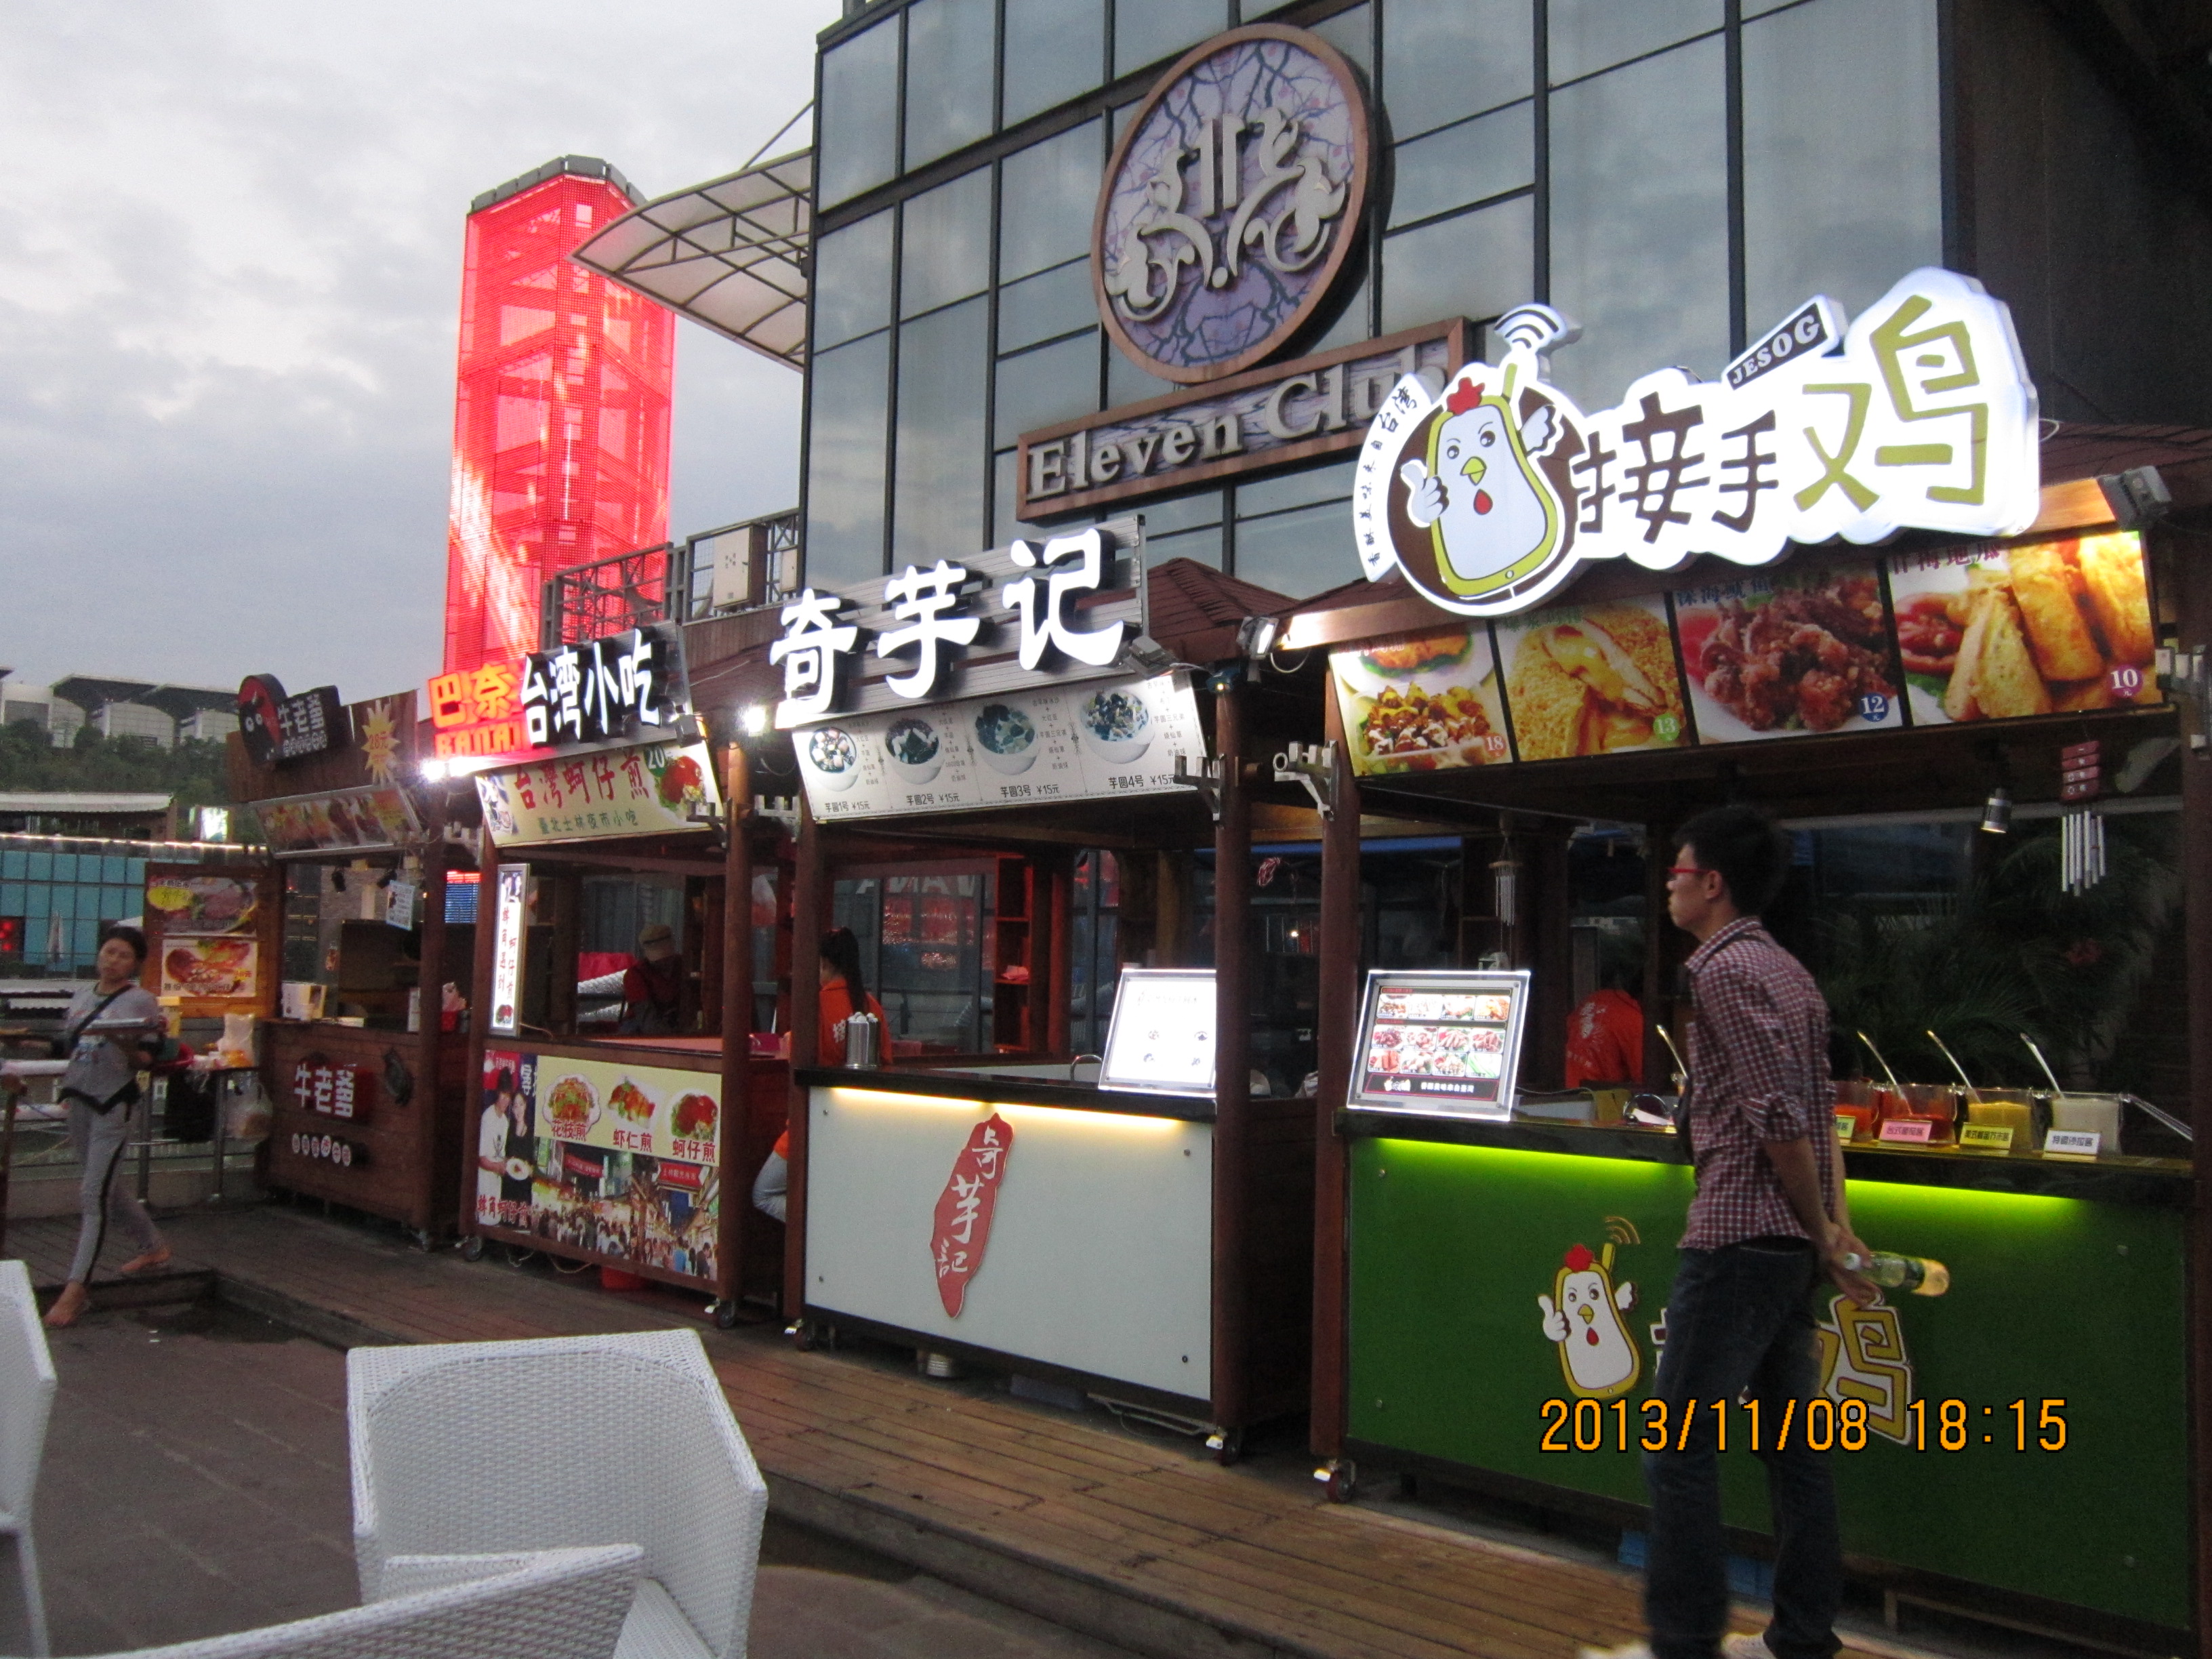 二期招商截止倒计时 民歌湖台湾美食广场将完